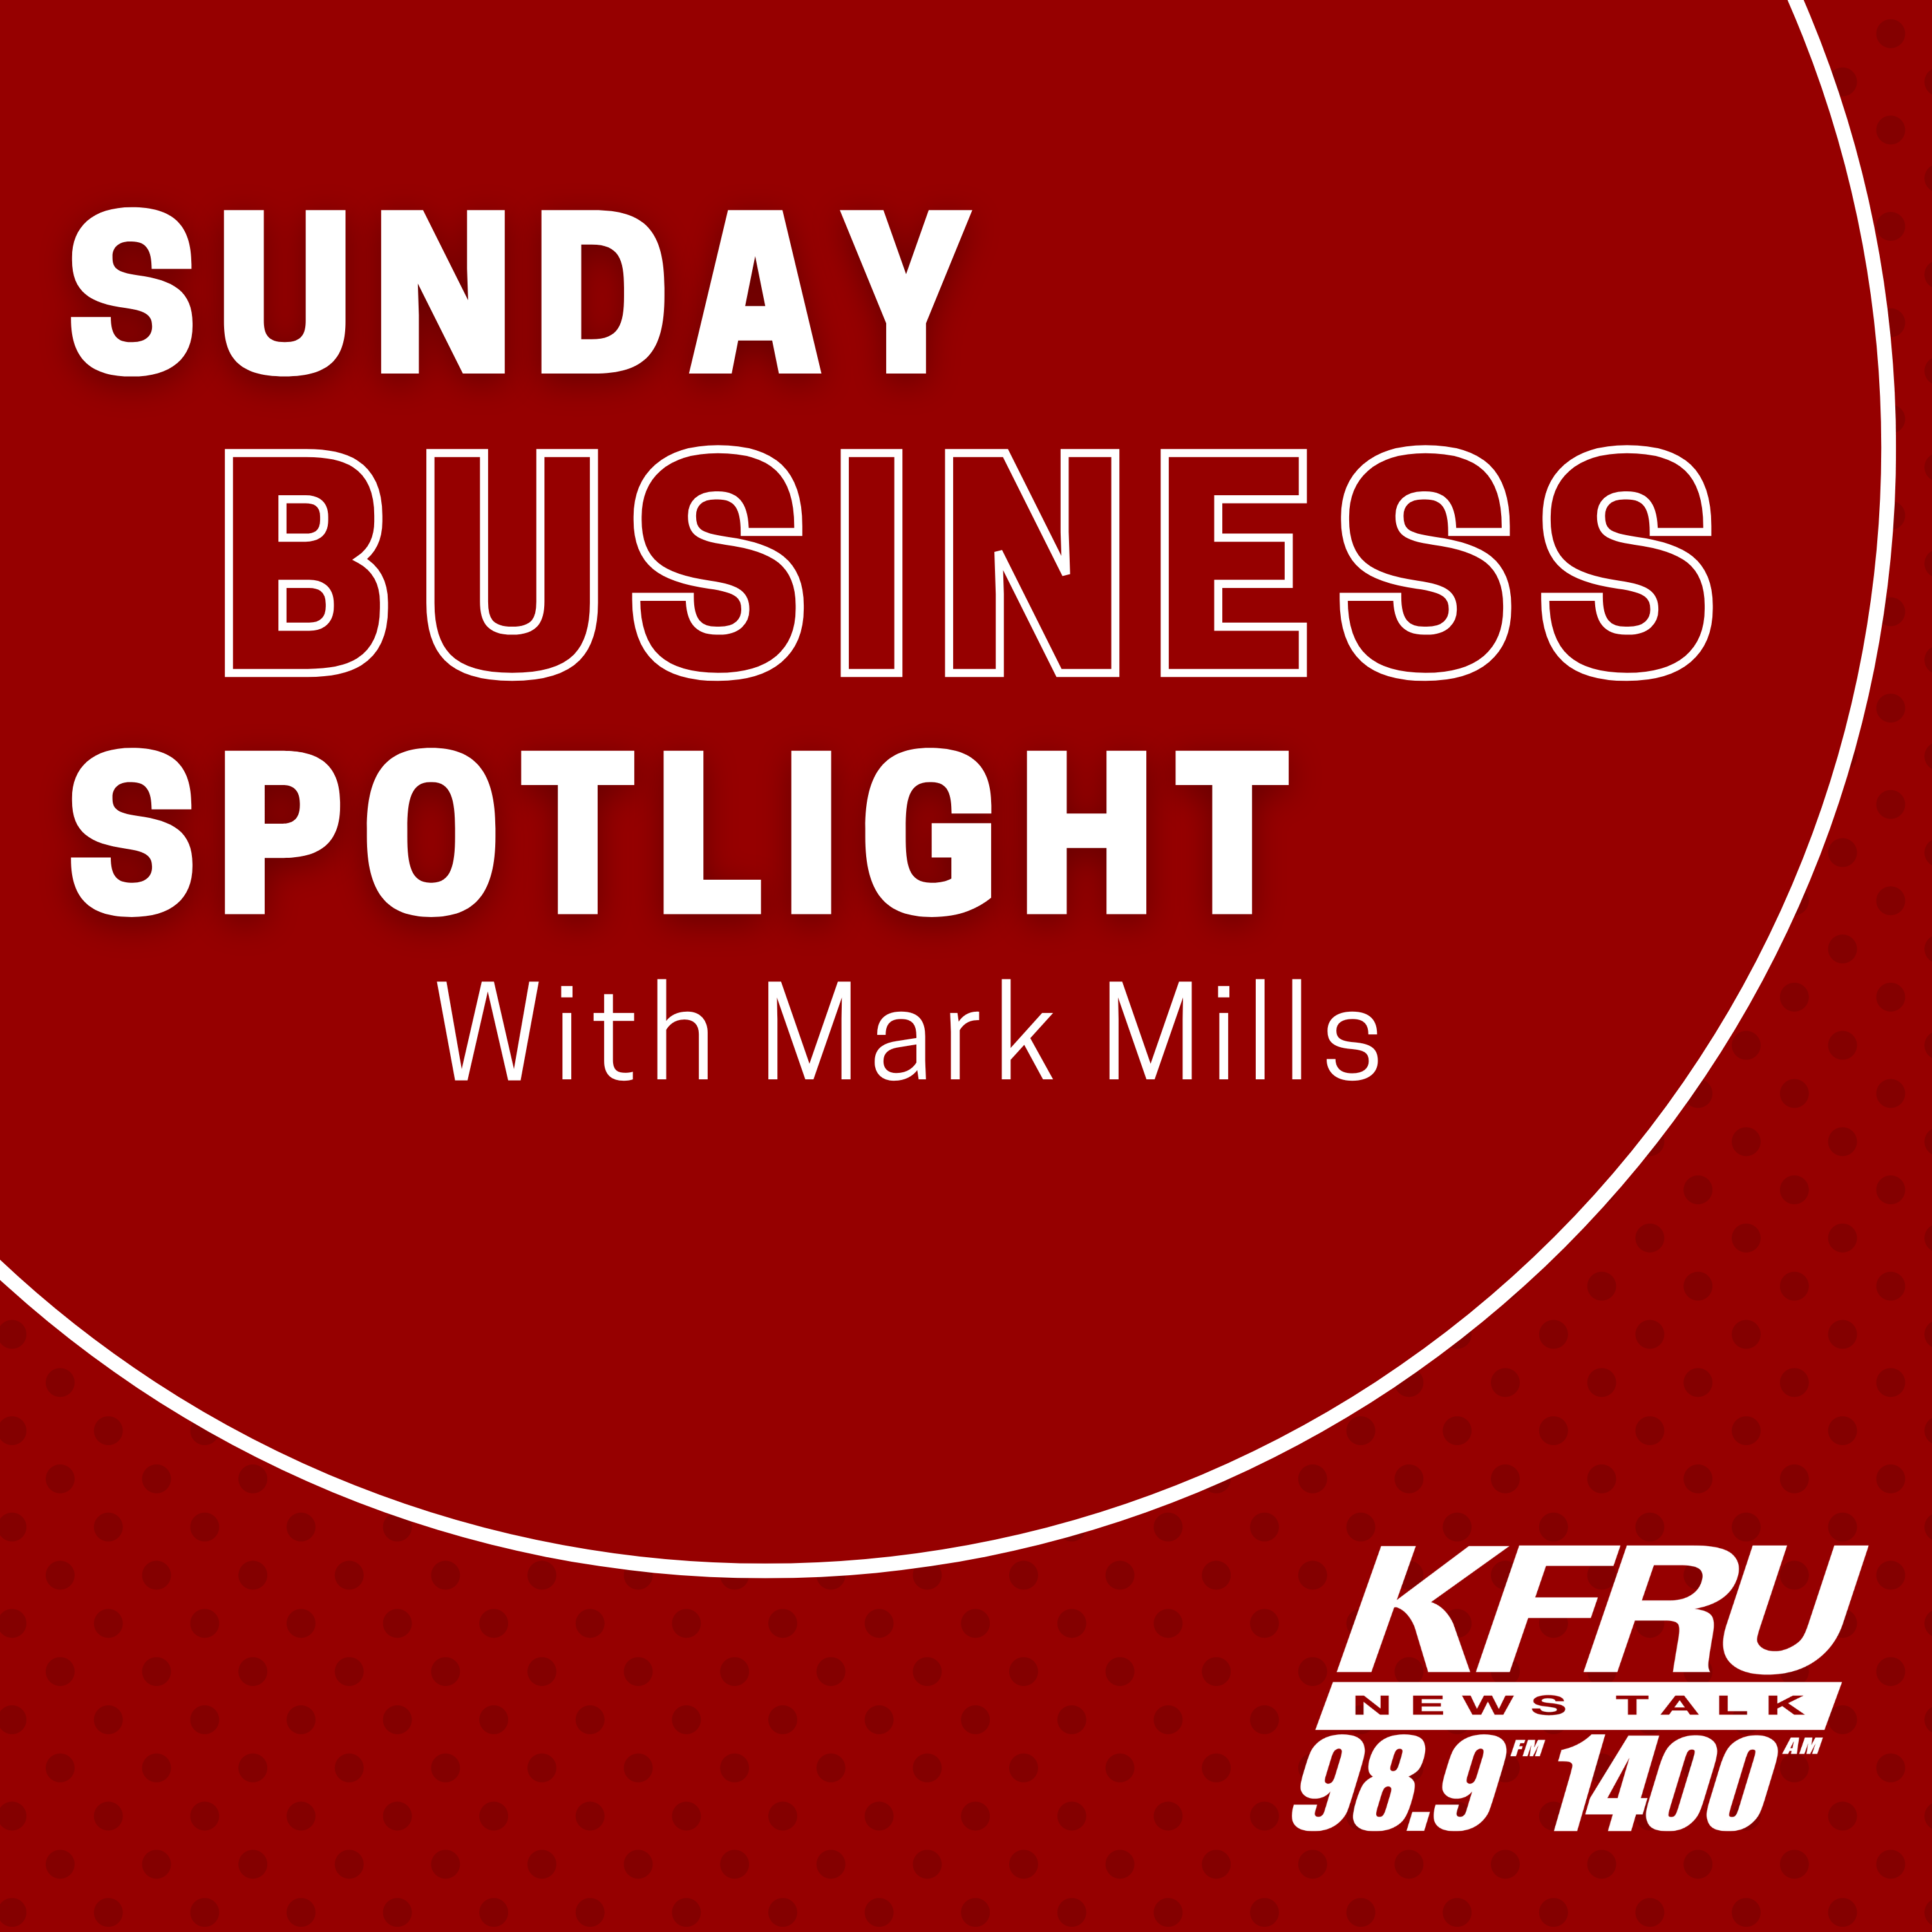 The KFRU Sunday Business Spotlight